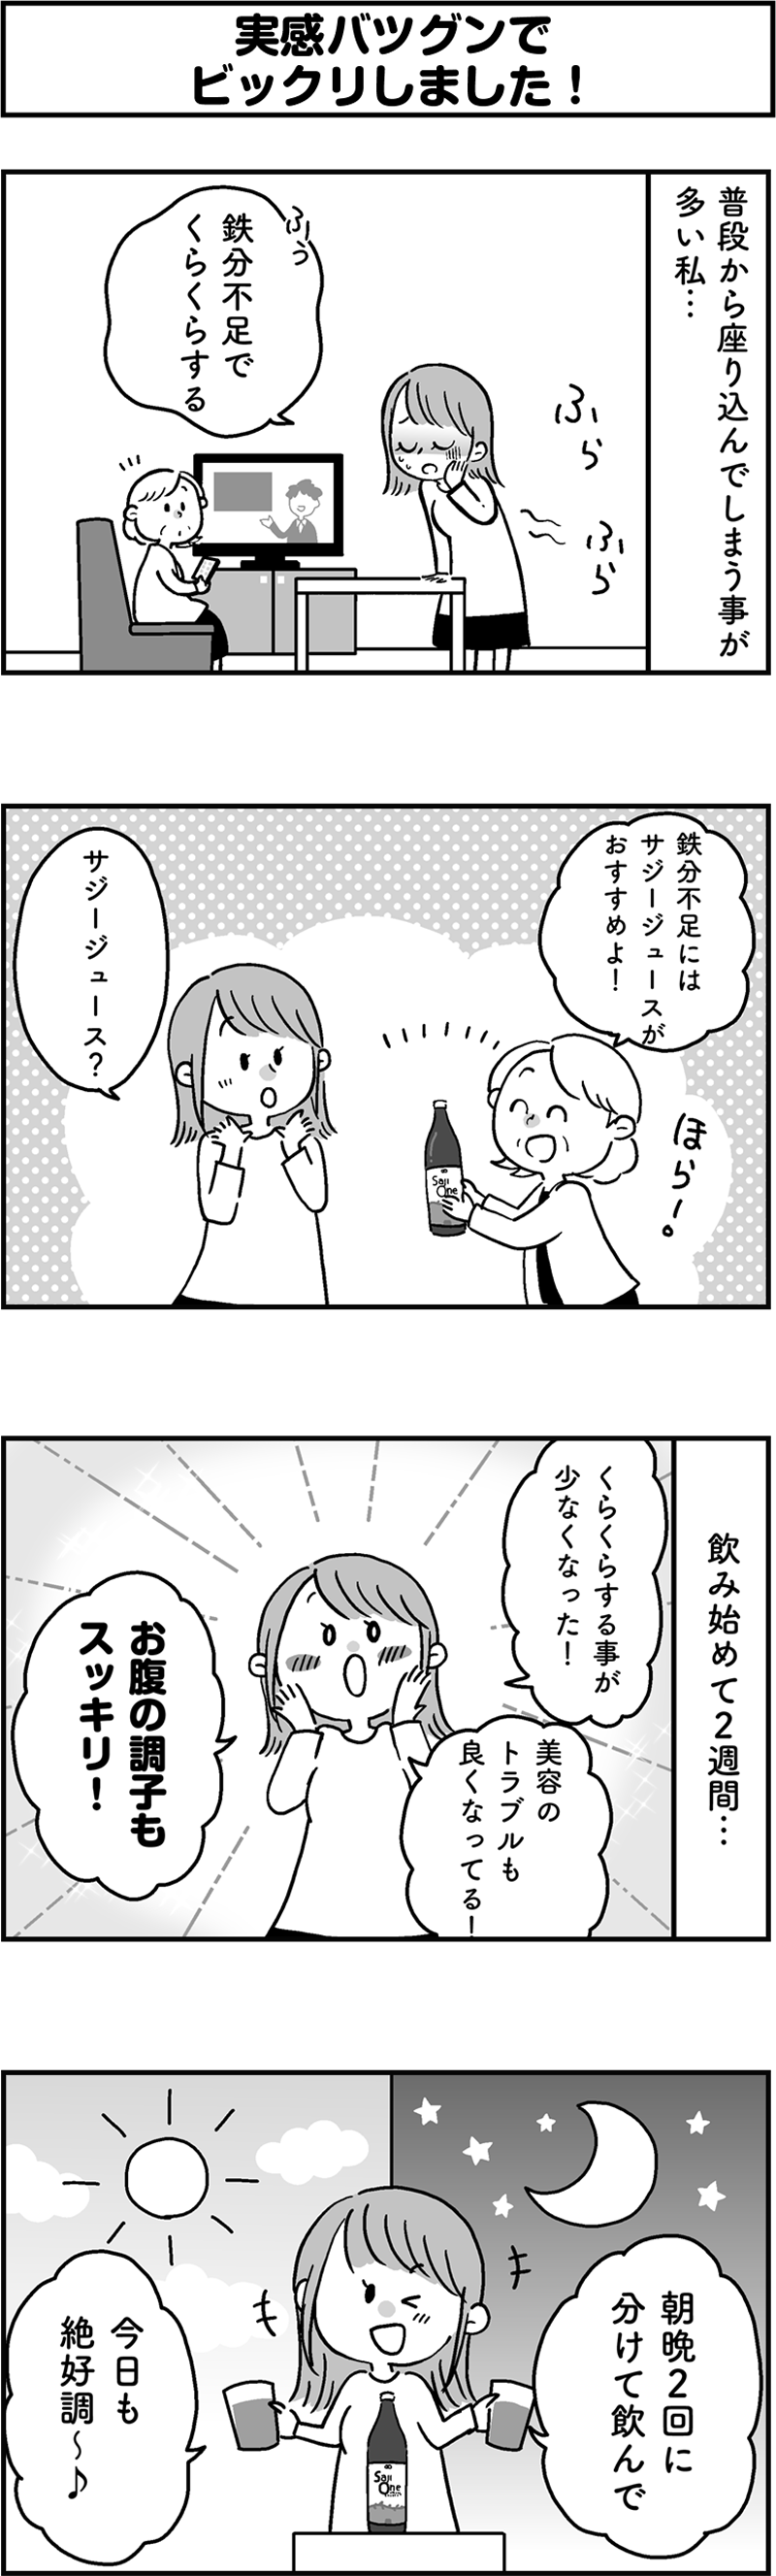 サジージュース「SajiOne」のPR4コマ漫画第2弾[画像1]